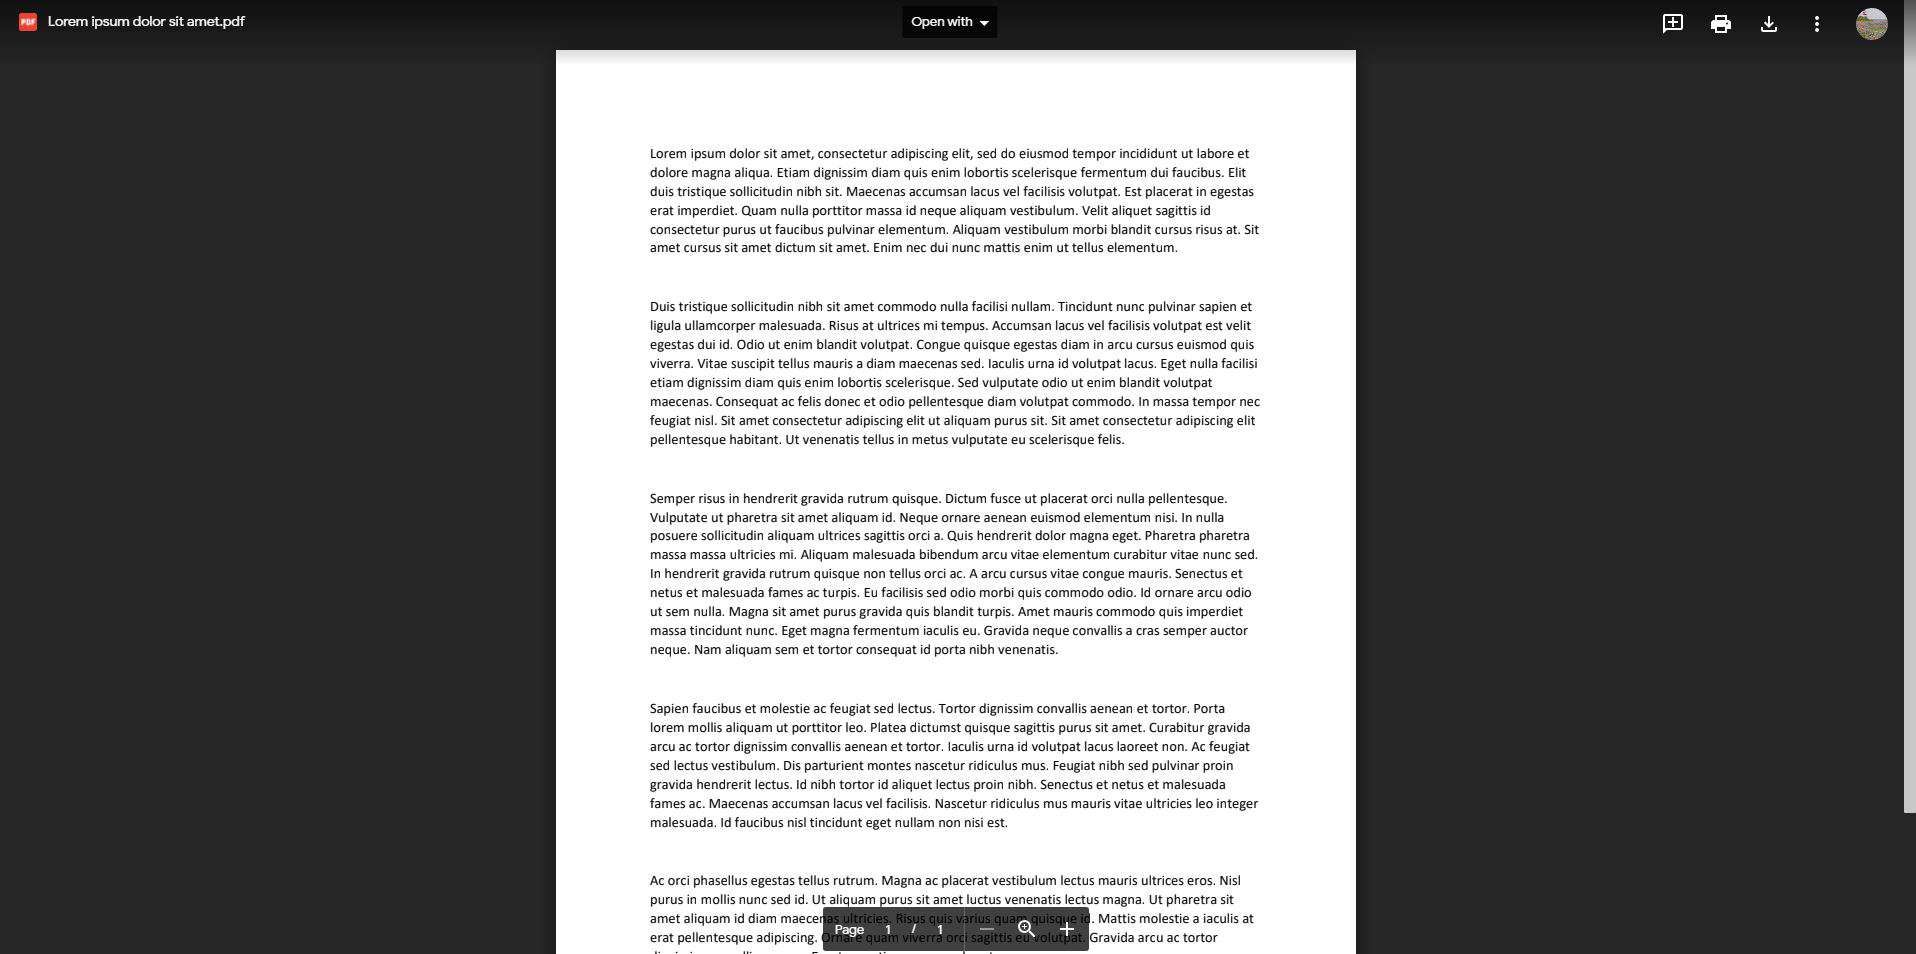 Снимок экрана загруженного PDF в Документах Google